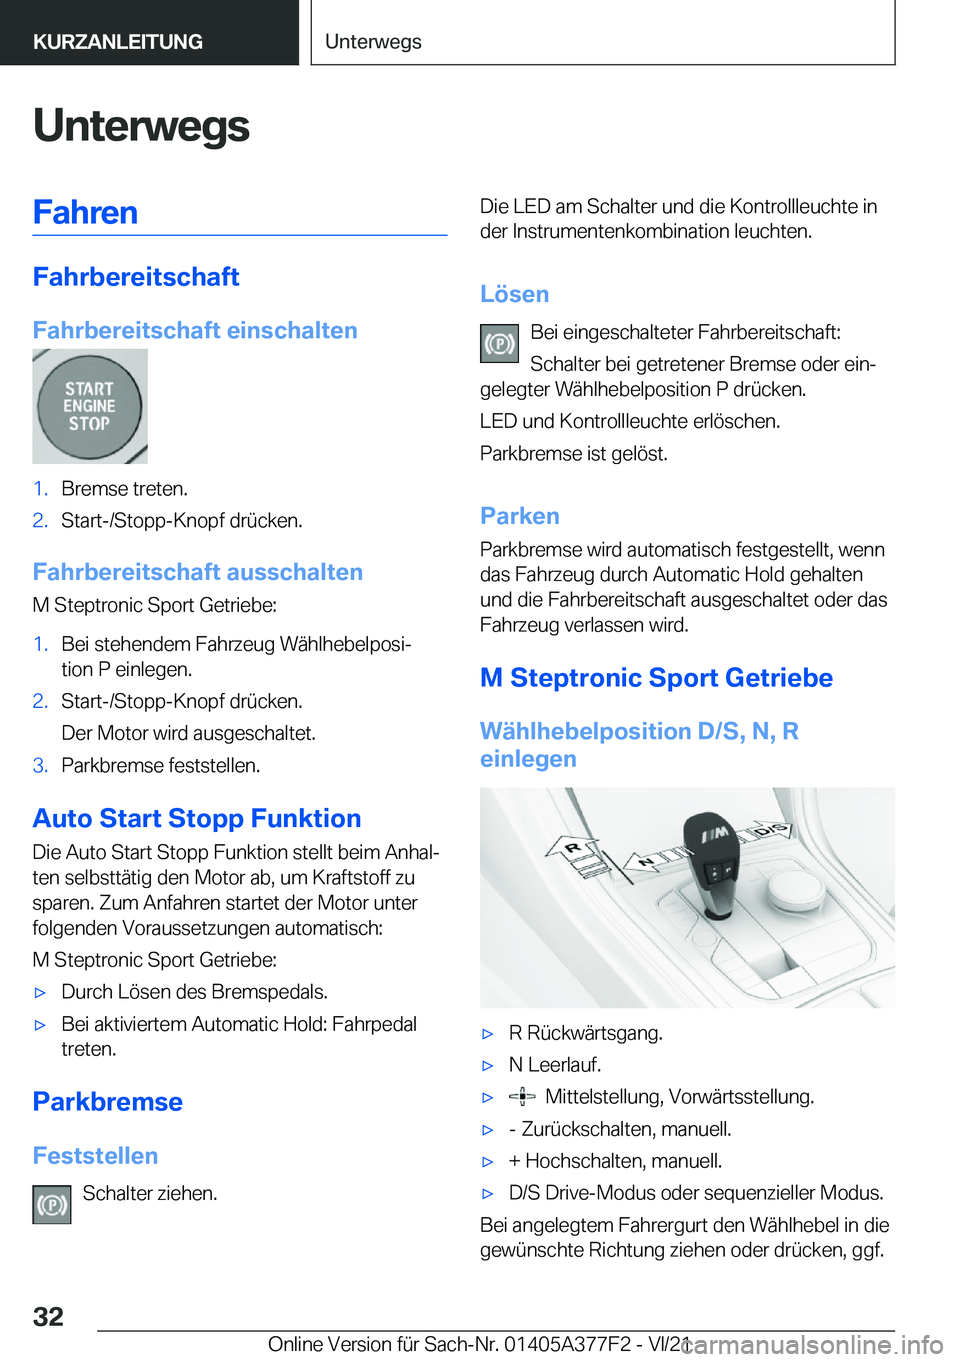 BMW X3 M 2022  Betriebsanleitungen (in German) �U�n�t�e�r�w�e�g�s�F�a�h�r�e�n
�F�a�h�r�b�e�r�e�i�t�s�c�h�a�f�t
�F�a�h�r�b�e�r�e�i�t�s�c�h�a�f�t��e�i�n�s�c�h�a�l�t�e�n
�1�.�B�r�e�m�s�e��t�r�e�t�e�n�.�2�.�S�t�a�r�t�-�/�S�t�o�p�p�-�K�n�o�p�f��d�r�